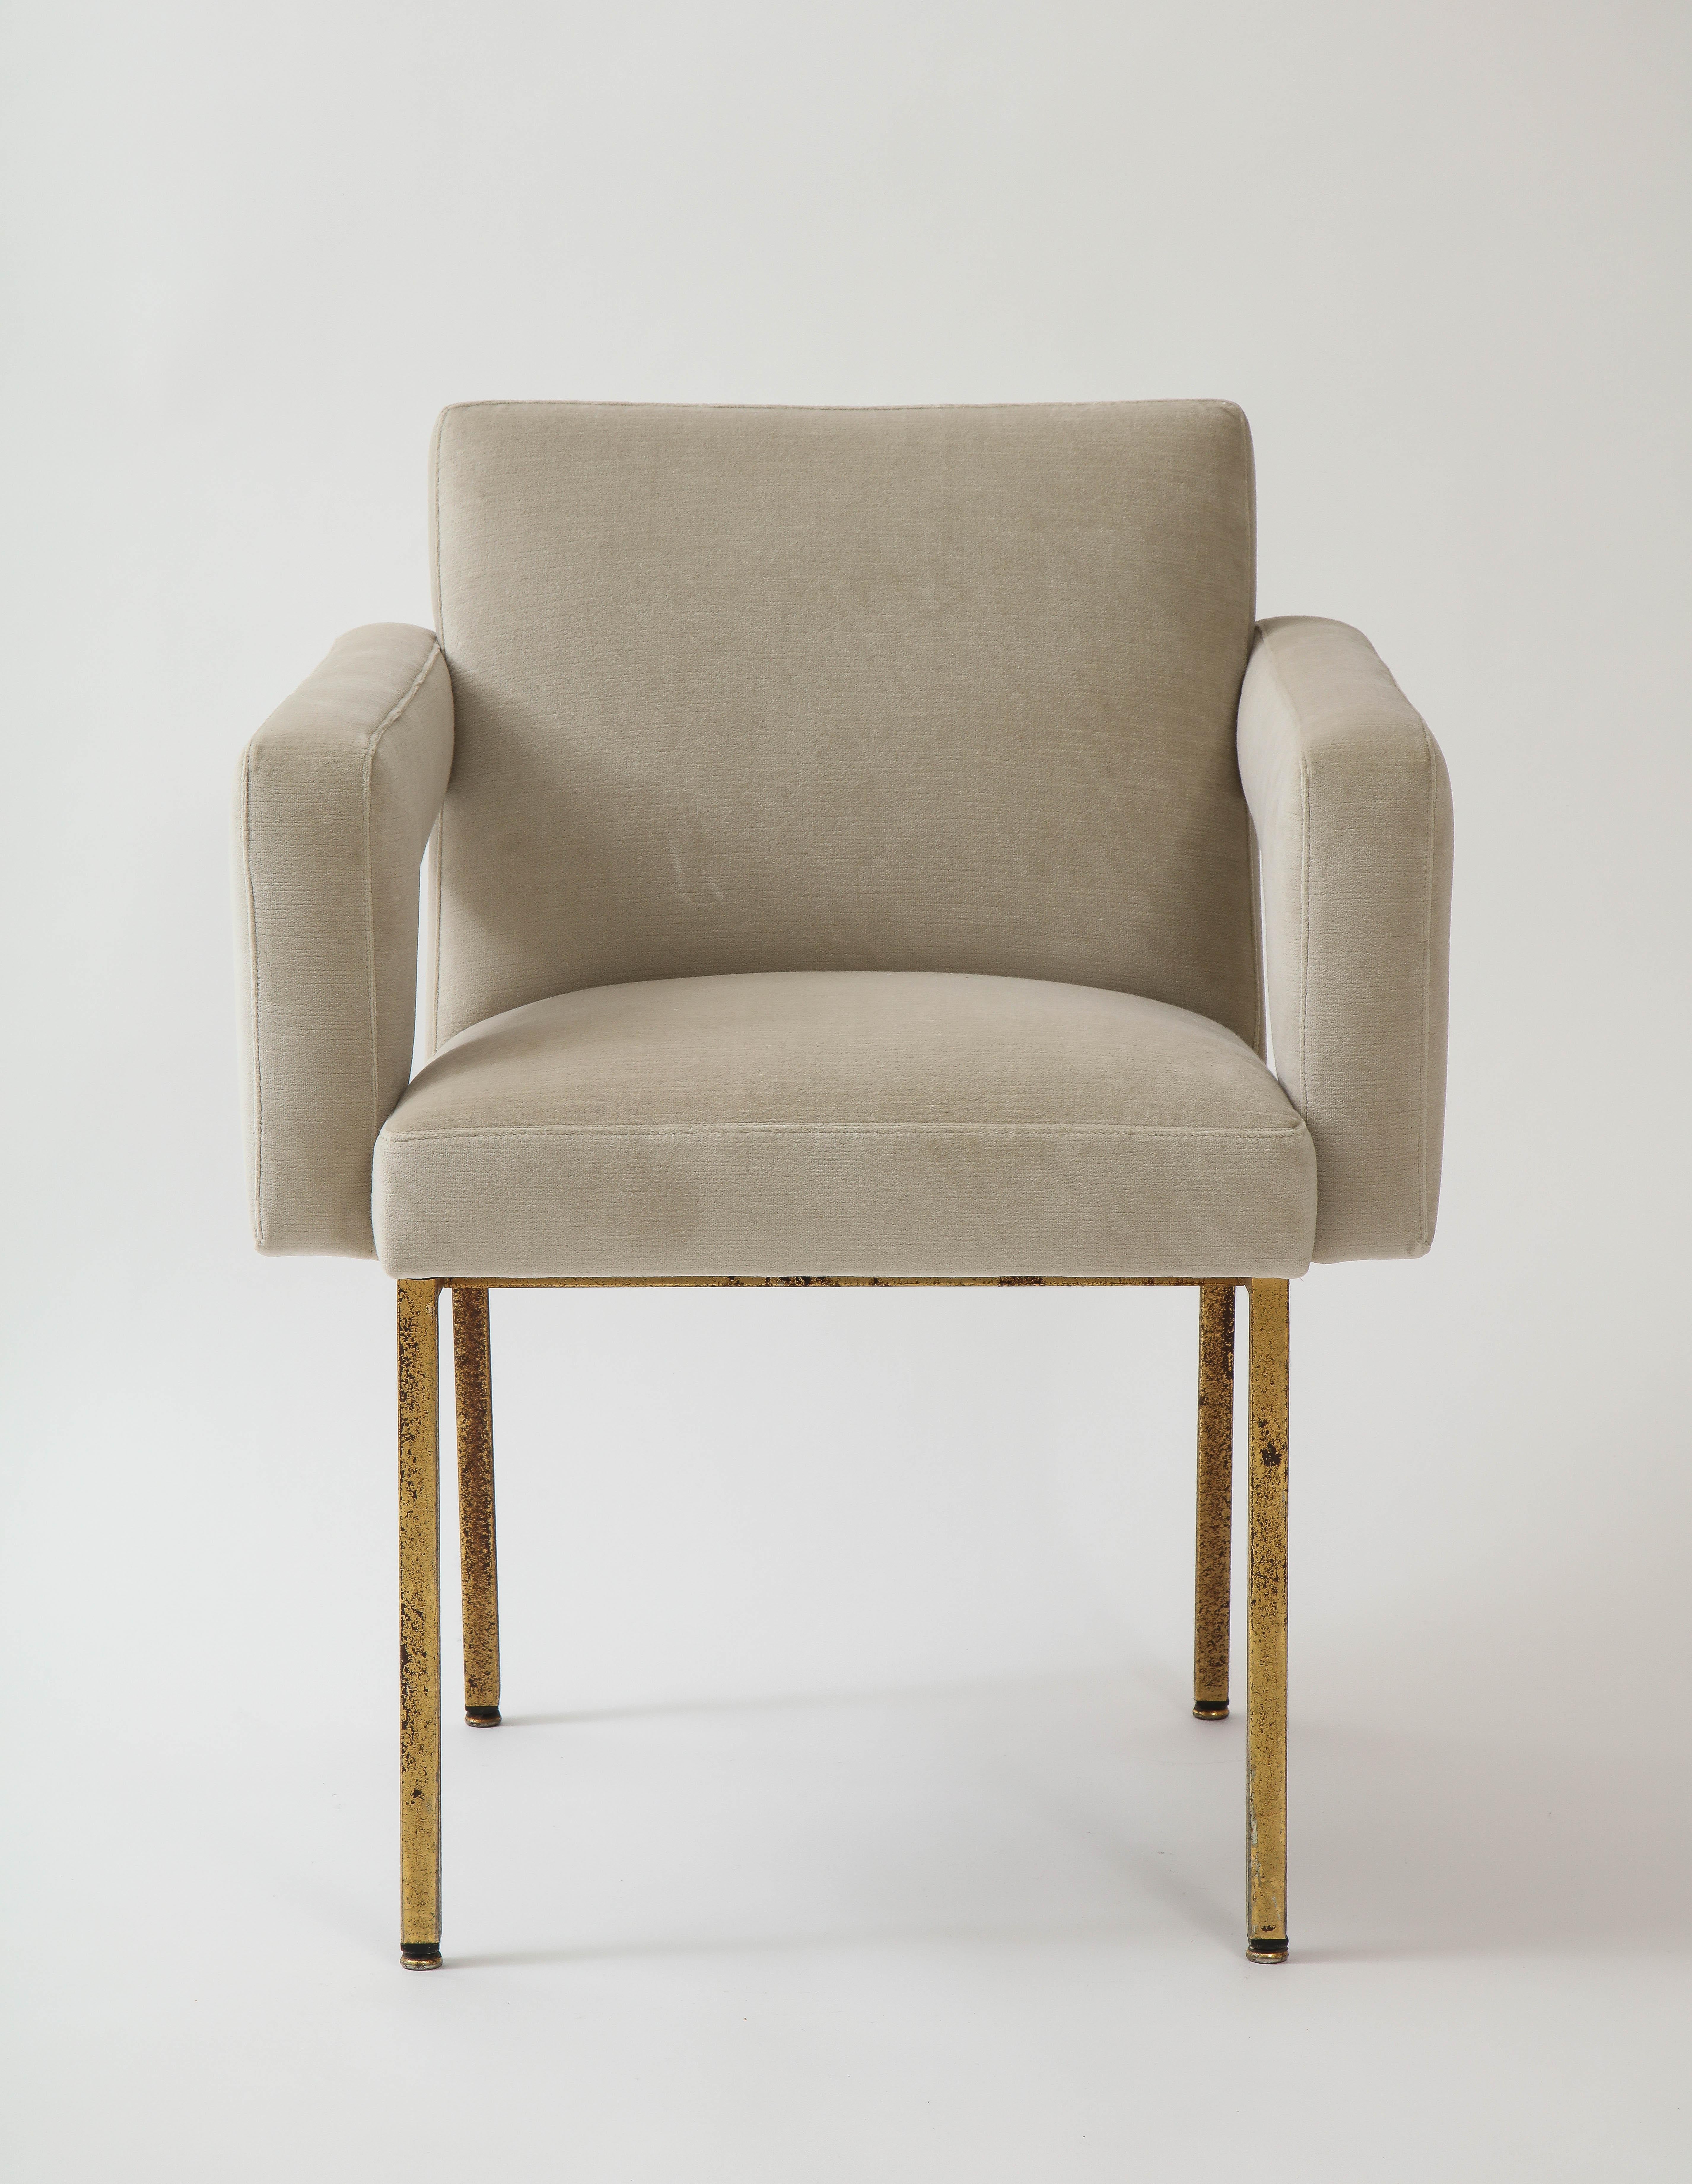 French Jacques Adnet President Chair Brass, Re-Upholstered Grey Velvet, France, 1959